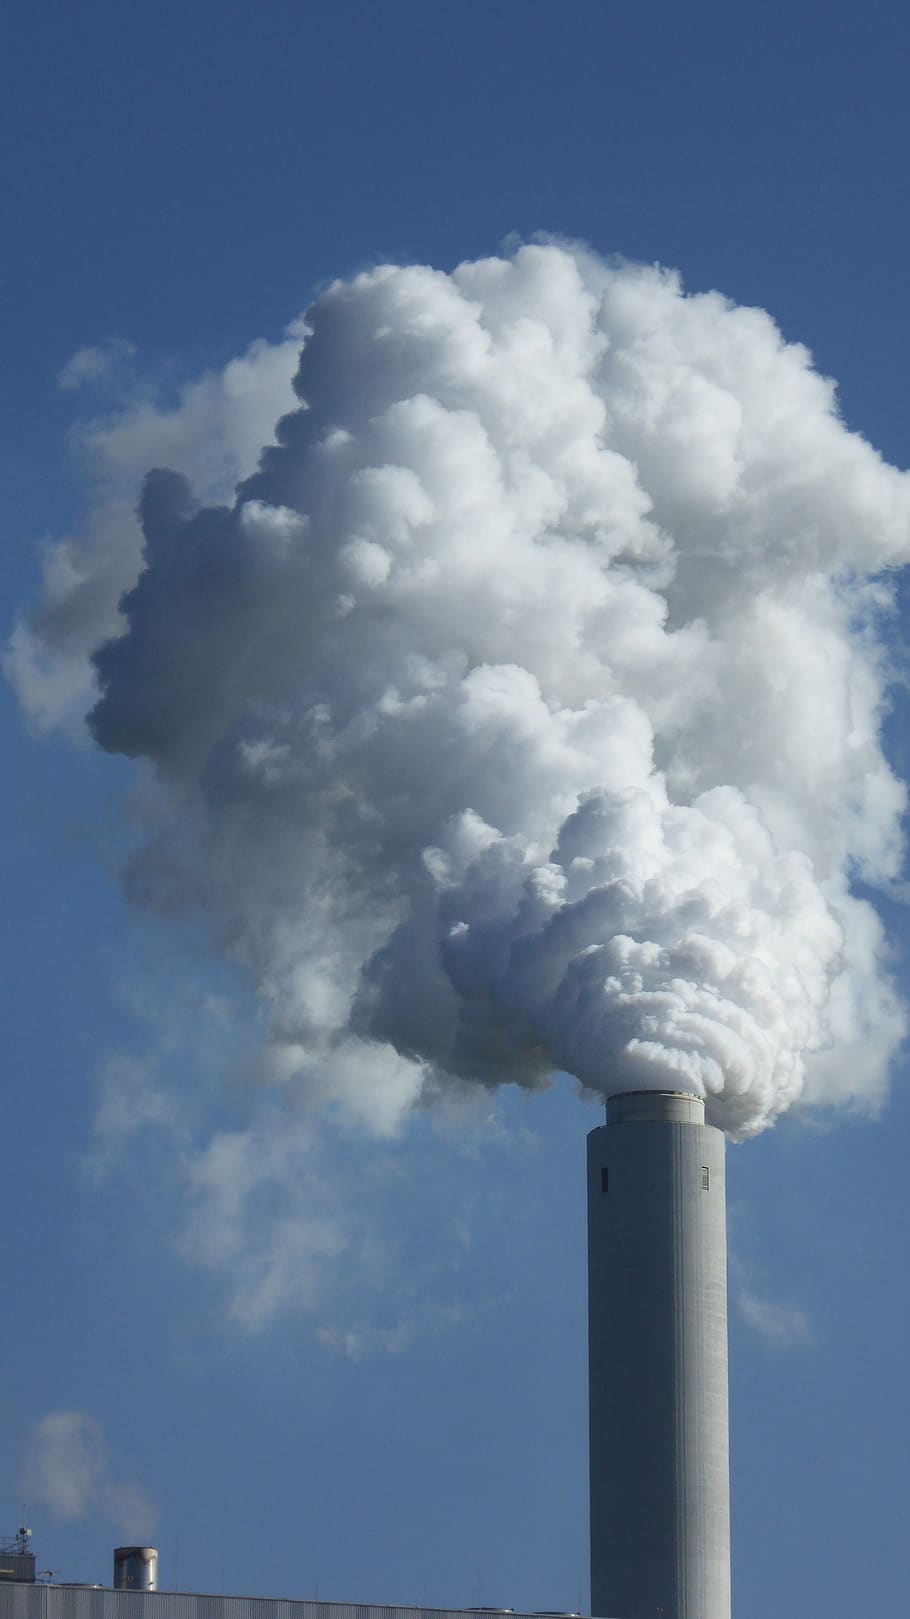 emisi, uap, asap, cerobong asap, perapian, lingkungan, kabut asap, polusi, industri, iklim